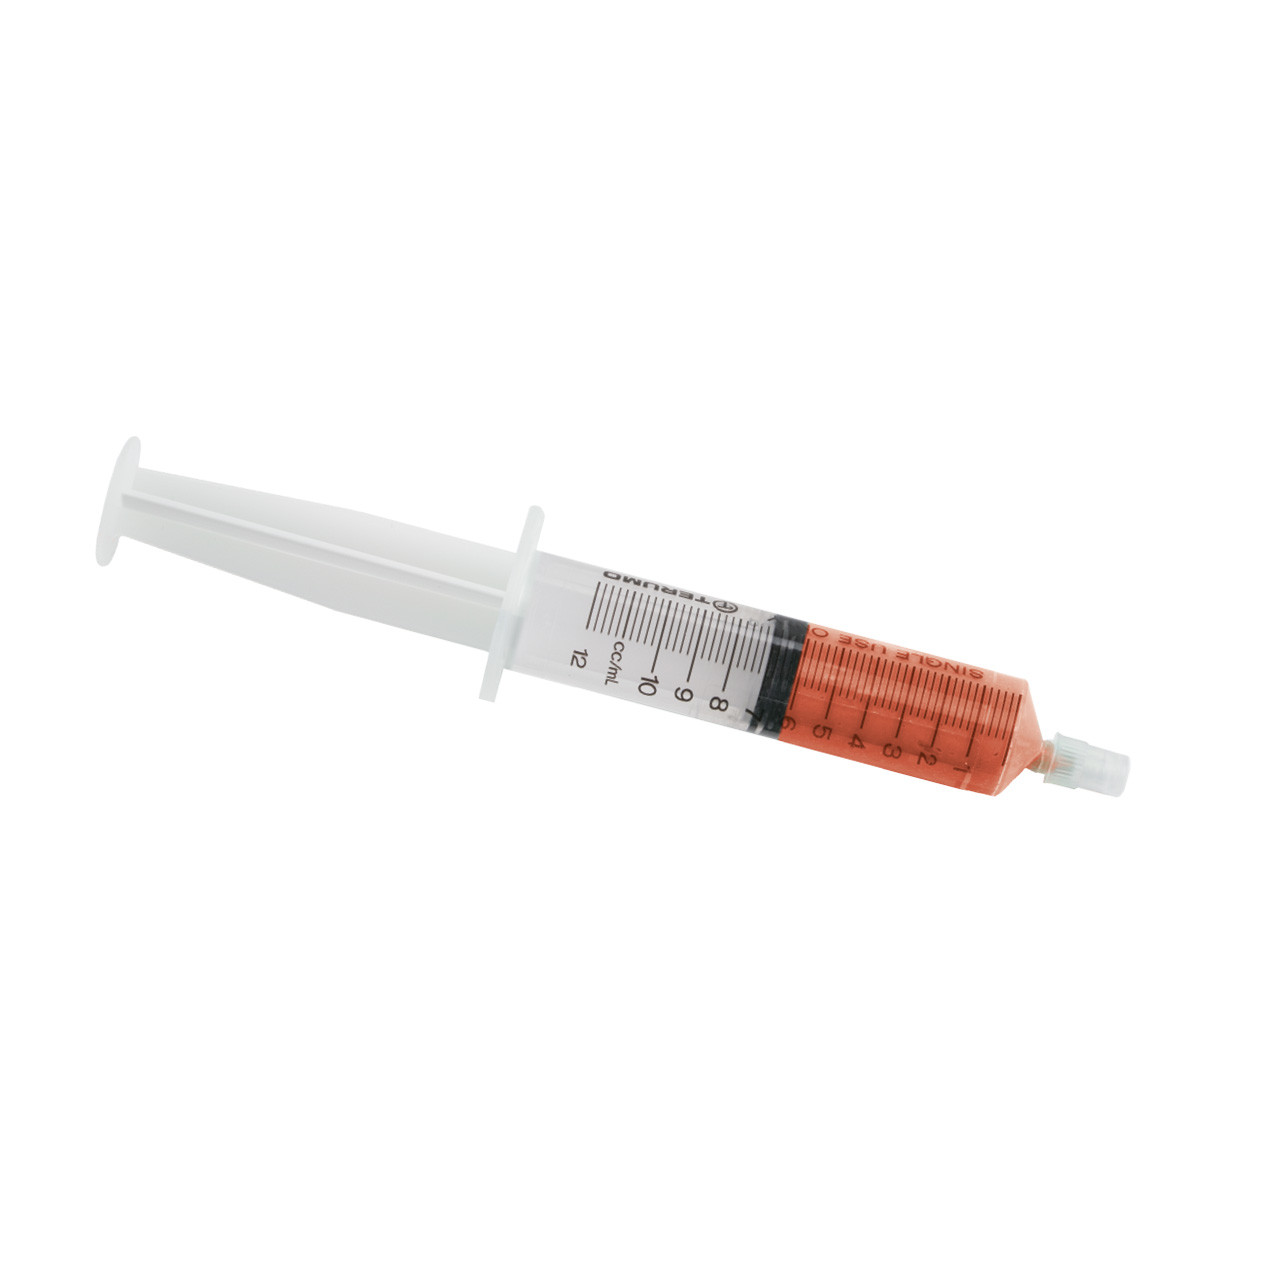 Gesswein® Diamond Compound, Budget Oil Soluble - Orange, 6-Gram Syringe, 6-48M